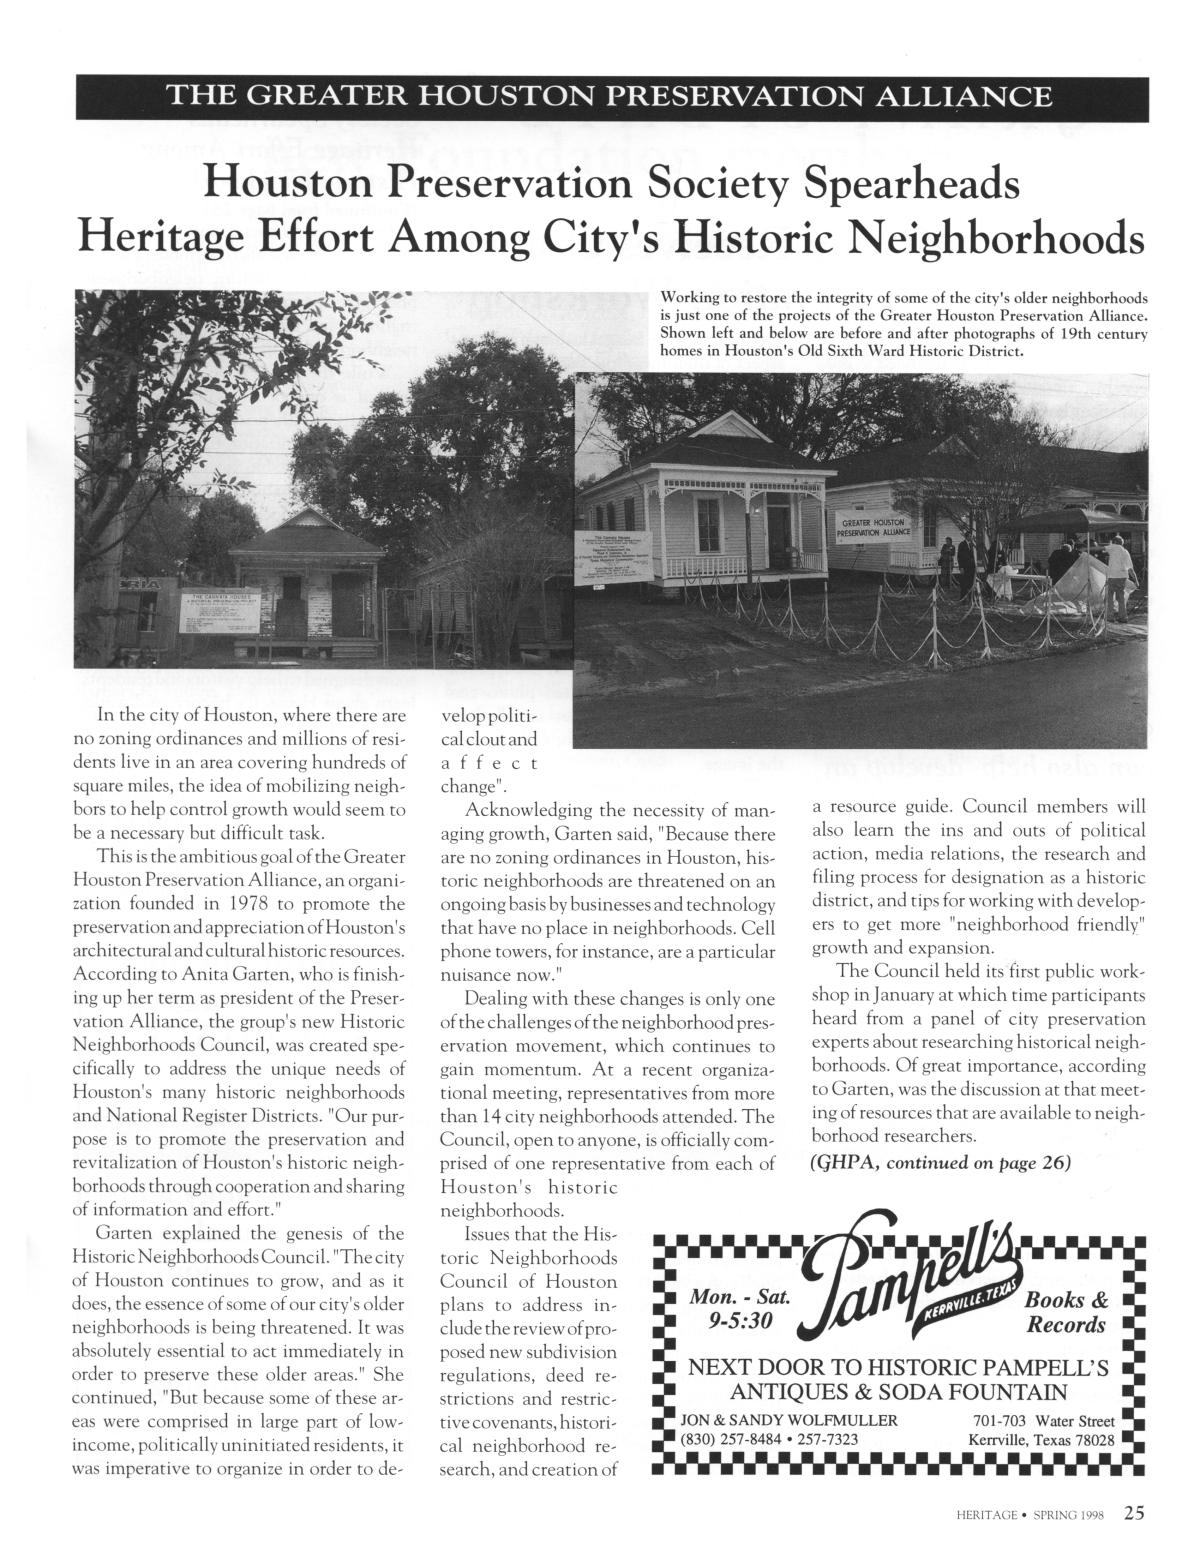 Heritage, Volume 16, Number 2, Spring 1998
                                                
                                                    25
                                                